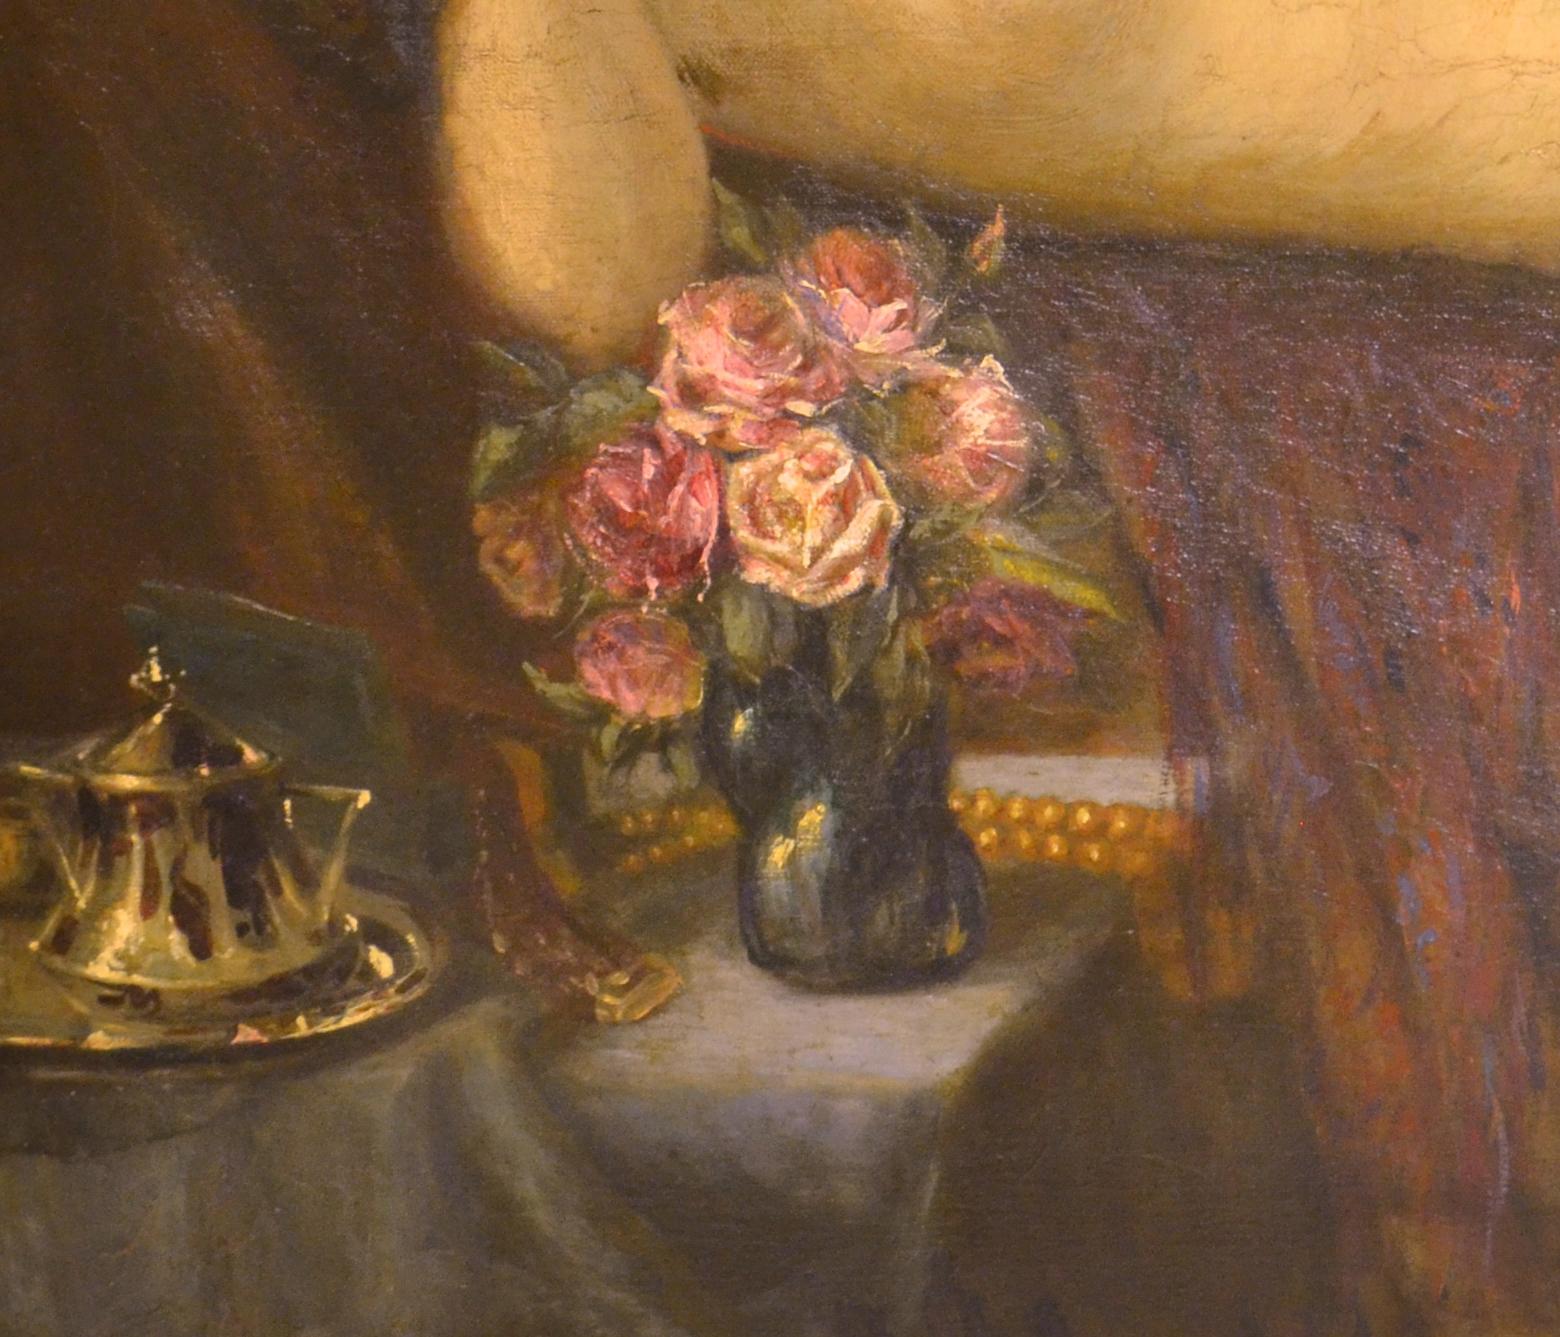 JAN WYSOCKI (polonais 1873-1960)
Femme nue couchée avec miroir et roses
Huile sur toile
39 x 48 pouces
Signé en bas à droite
Dans un cadre d'époque à la feuille d'or

Jan Wysocki est né le 7 février 1873 à Mysłowice, en Haute-Silésie. En 1893, il se